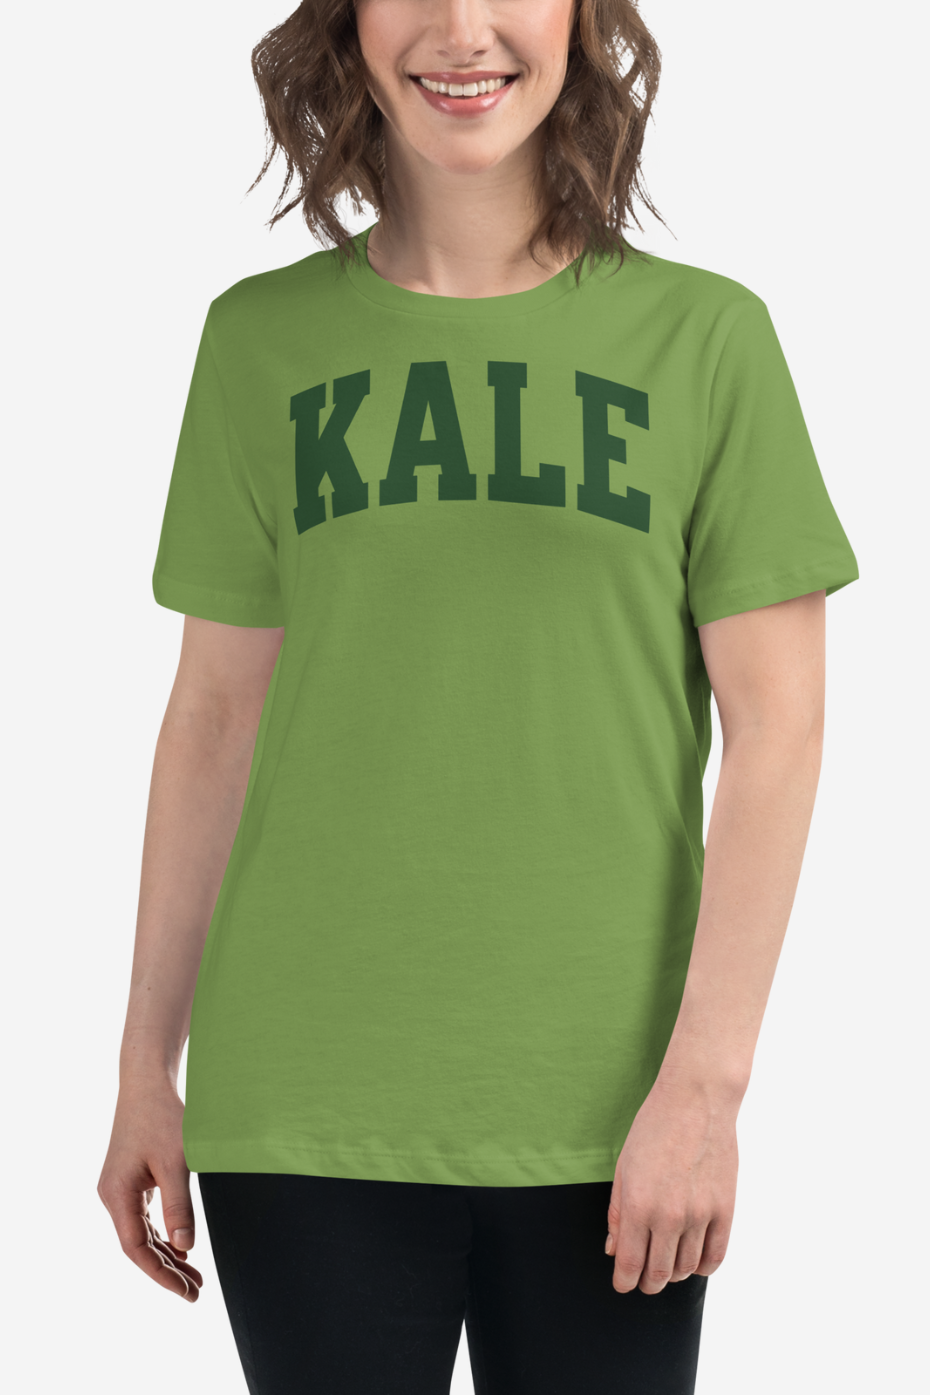 Kale Women's Relaxed T-Shirt